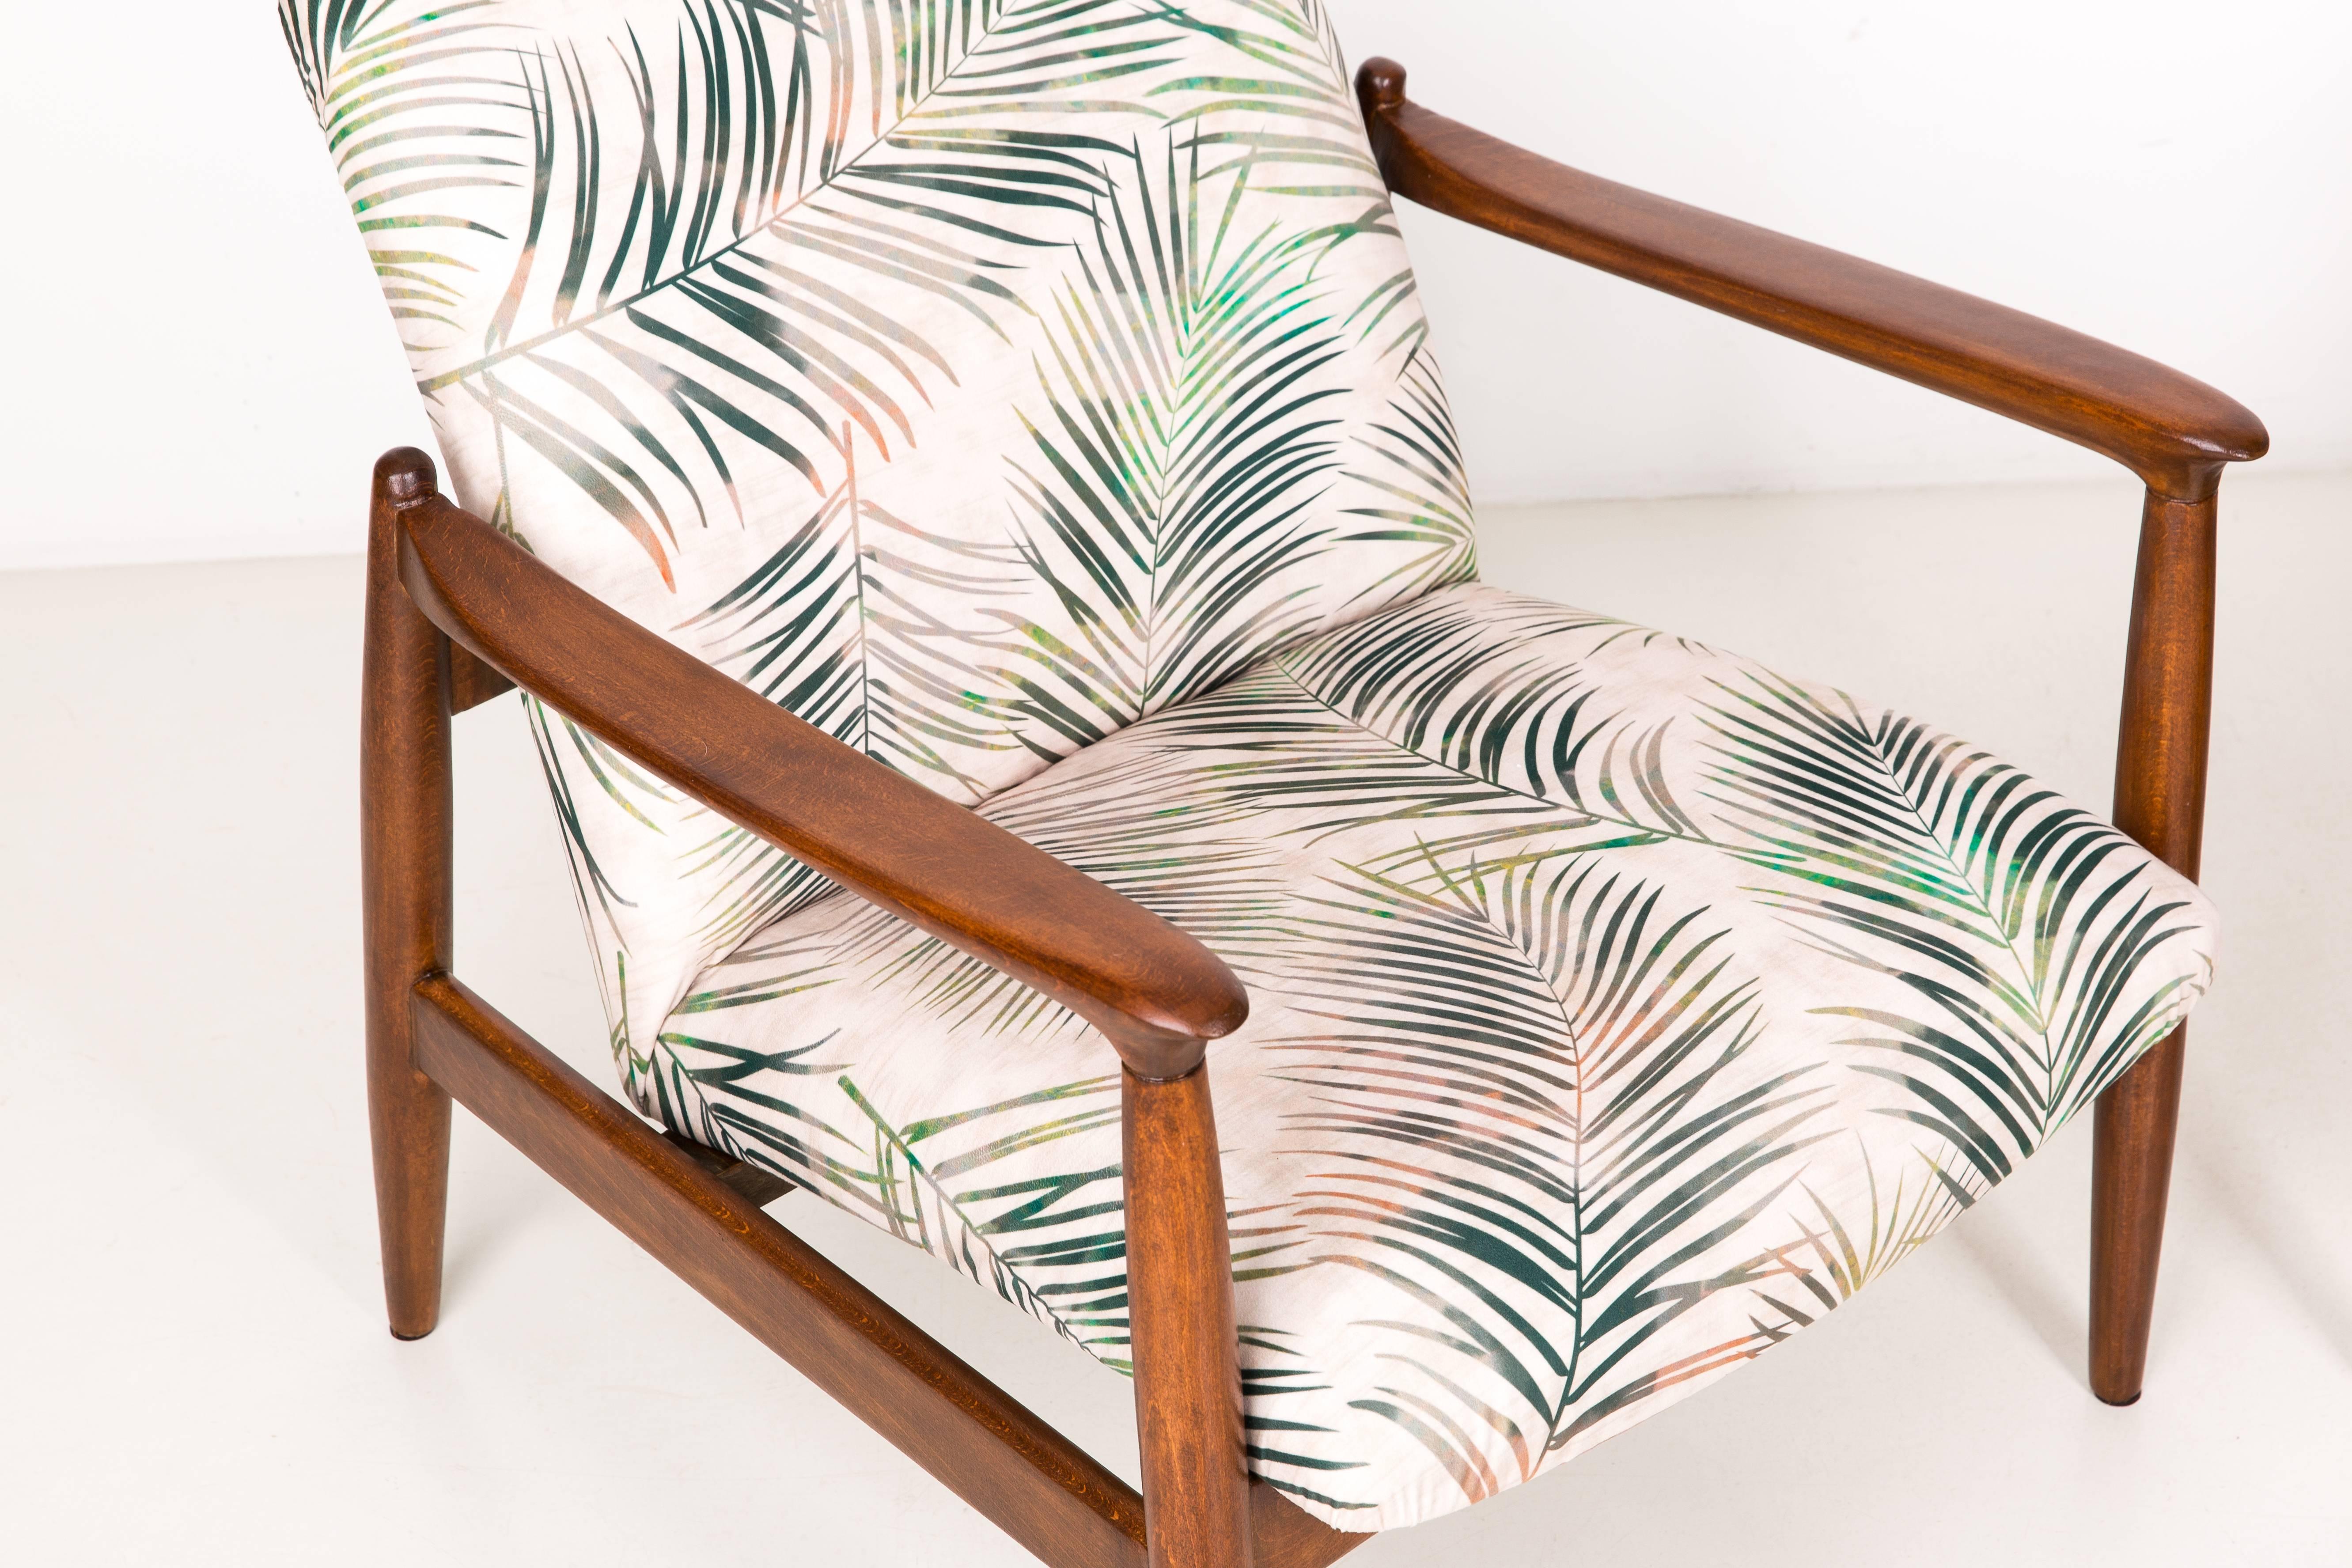 Une paire de fauteuils beiges, conçus par Edmund Homa. Les fauteuils ont été fabriqués dans les années 1960 dans la fabrique de meubles Gosciecinska. Ils sont fabriqués en bois de hêtre massif. Le fauteuil de type GFM est considéré comme l'un des